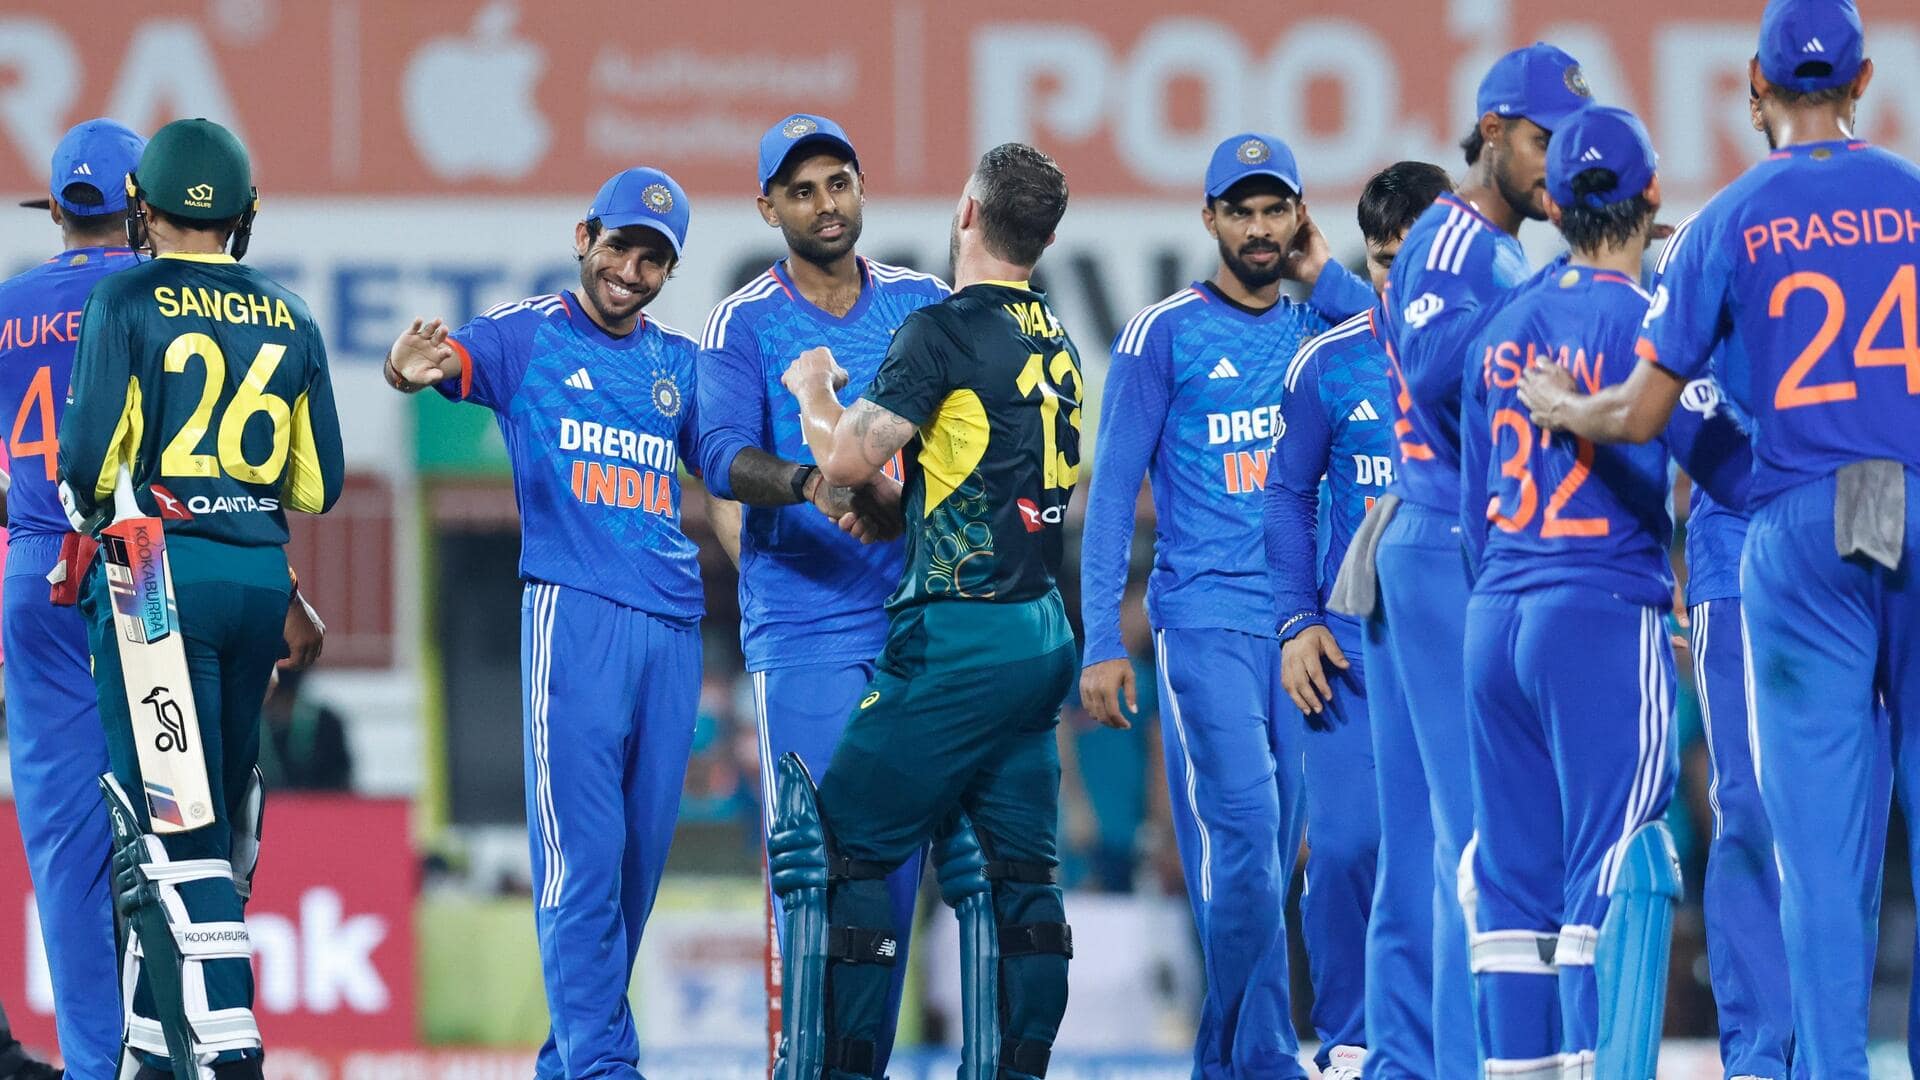  तीसरा टी-20: ऑस्ट्रेलिया ने भारत के खिलाफ टॉस जीतकर चुनी गेंदबाजी